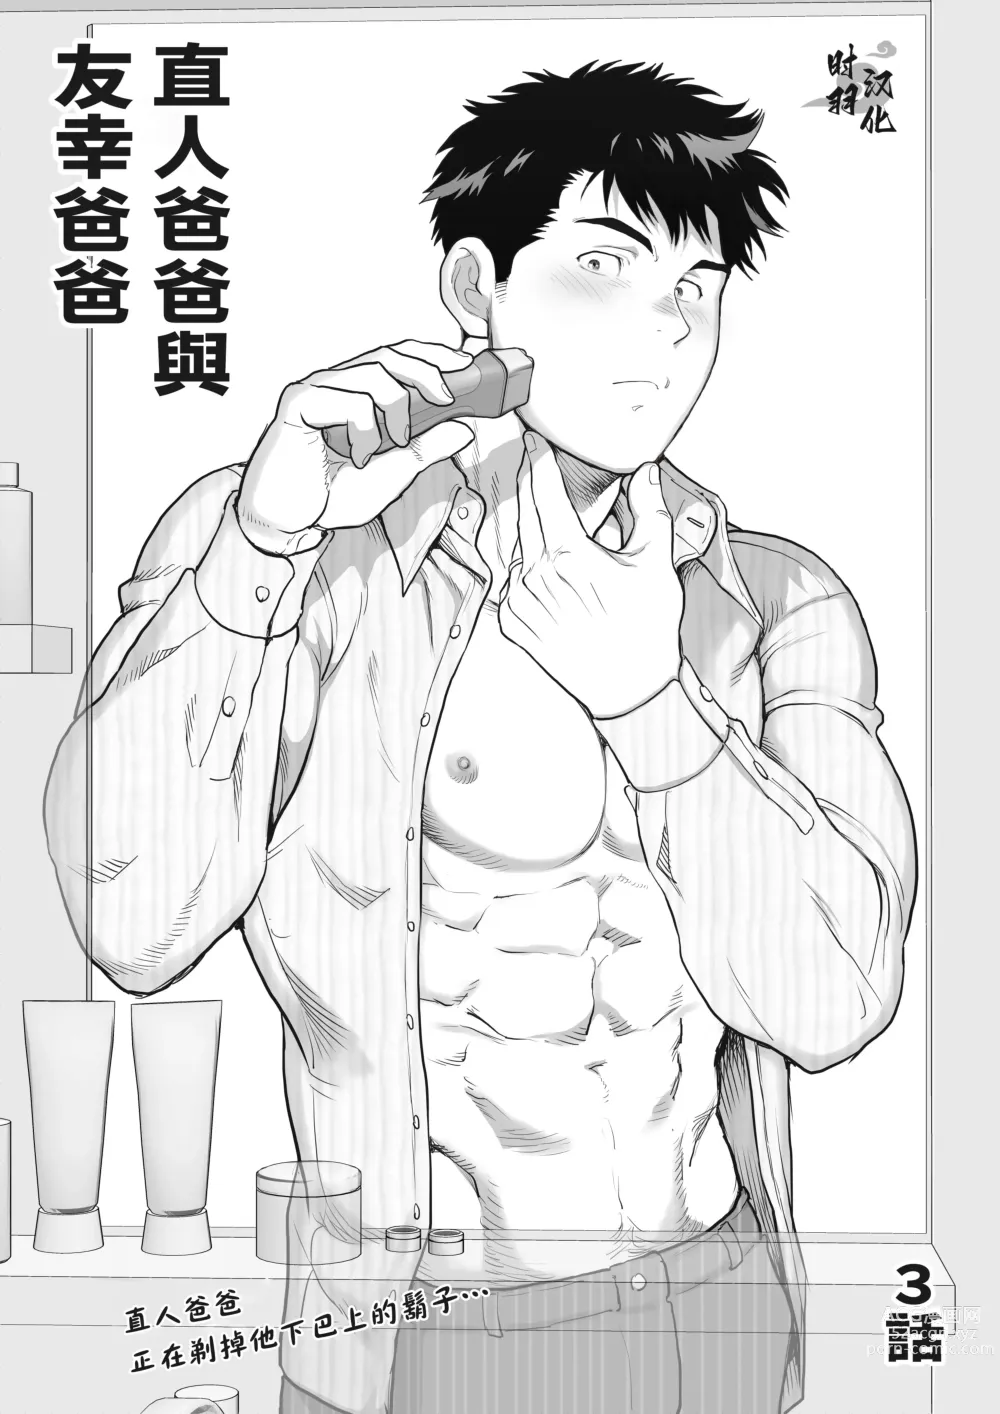 Page 1 of manga 直人爸爸与友幸爸爸 第三话